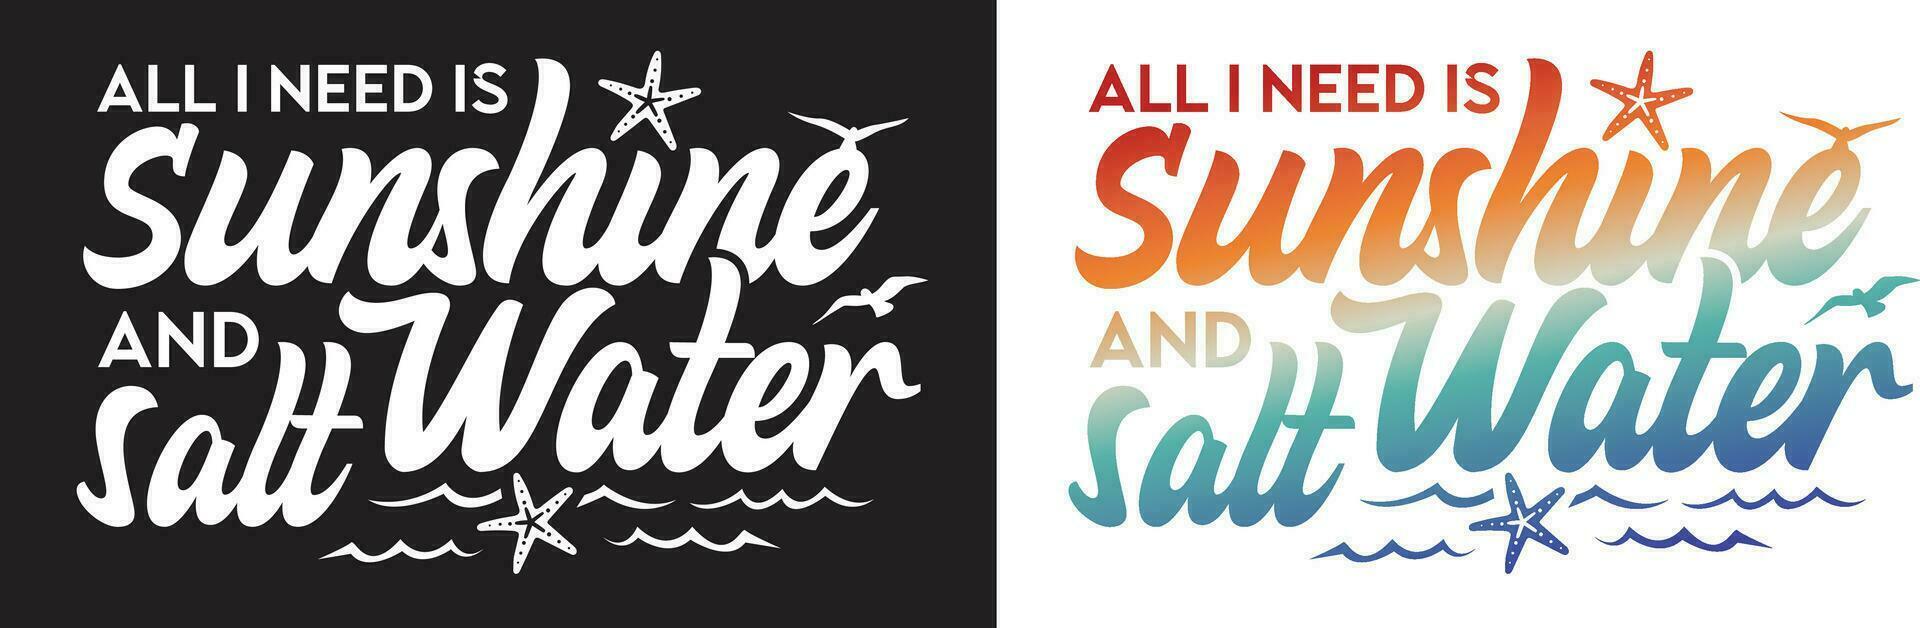 allemaal ik nodig hebben is zonneschijn en zout water. omringd door zeester, golven, en vogels.typografie belettering ontwerp. vector